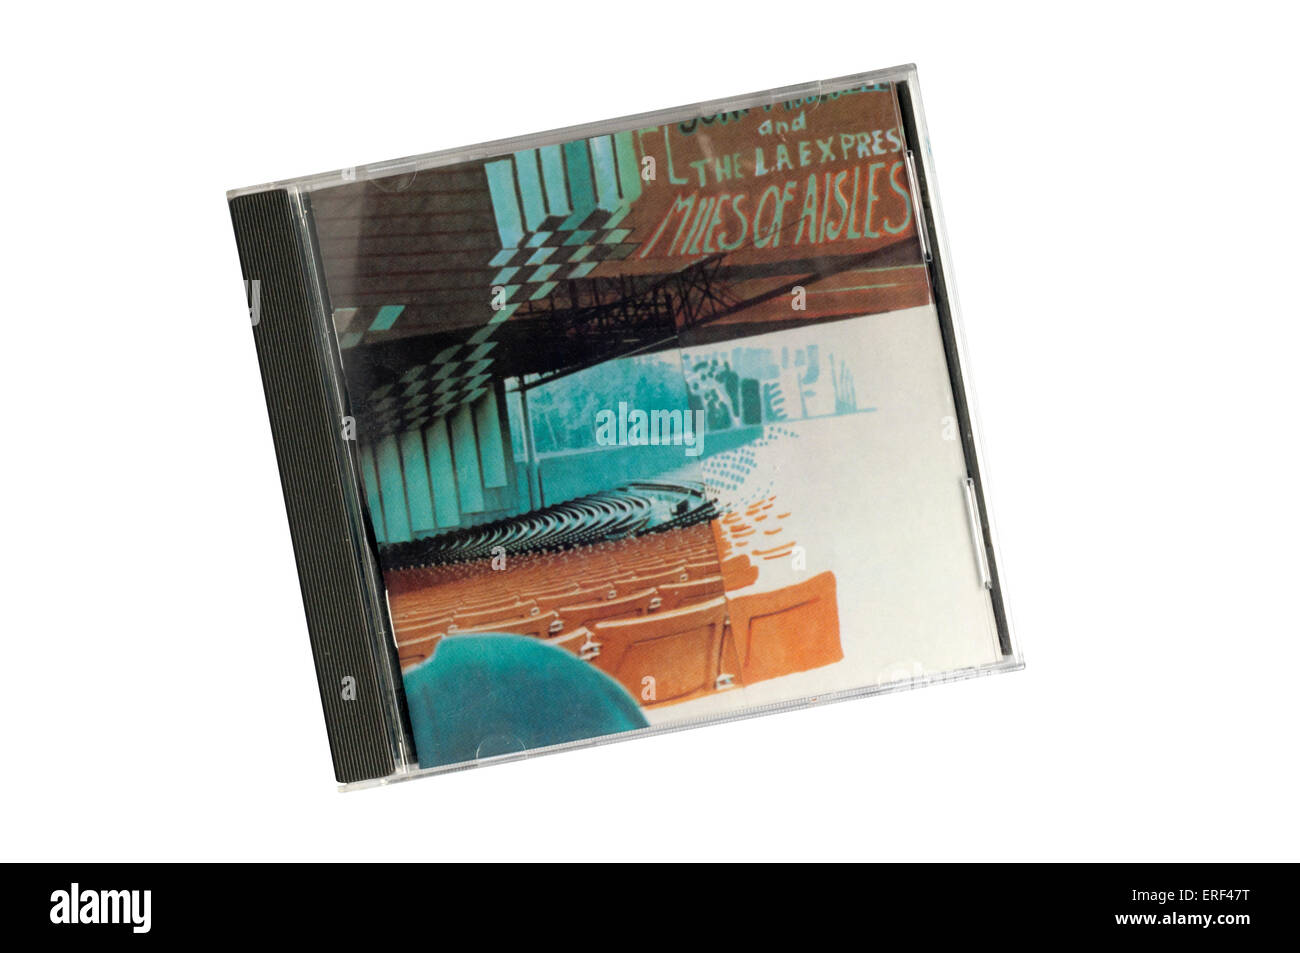 Des kilomètres de couloirs était un double album live 1974 par auteur et chanteuse canadienne Joni Mitchell avec le backing band L. A. Express. Banque D'Images